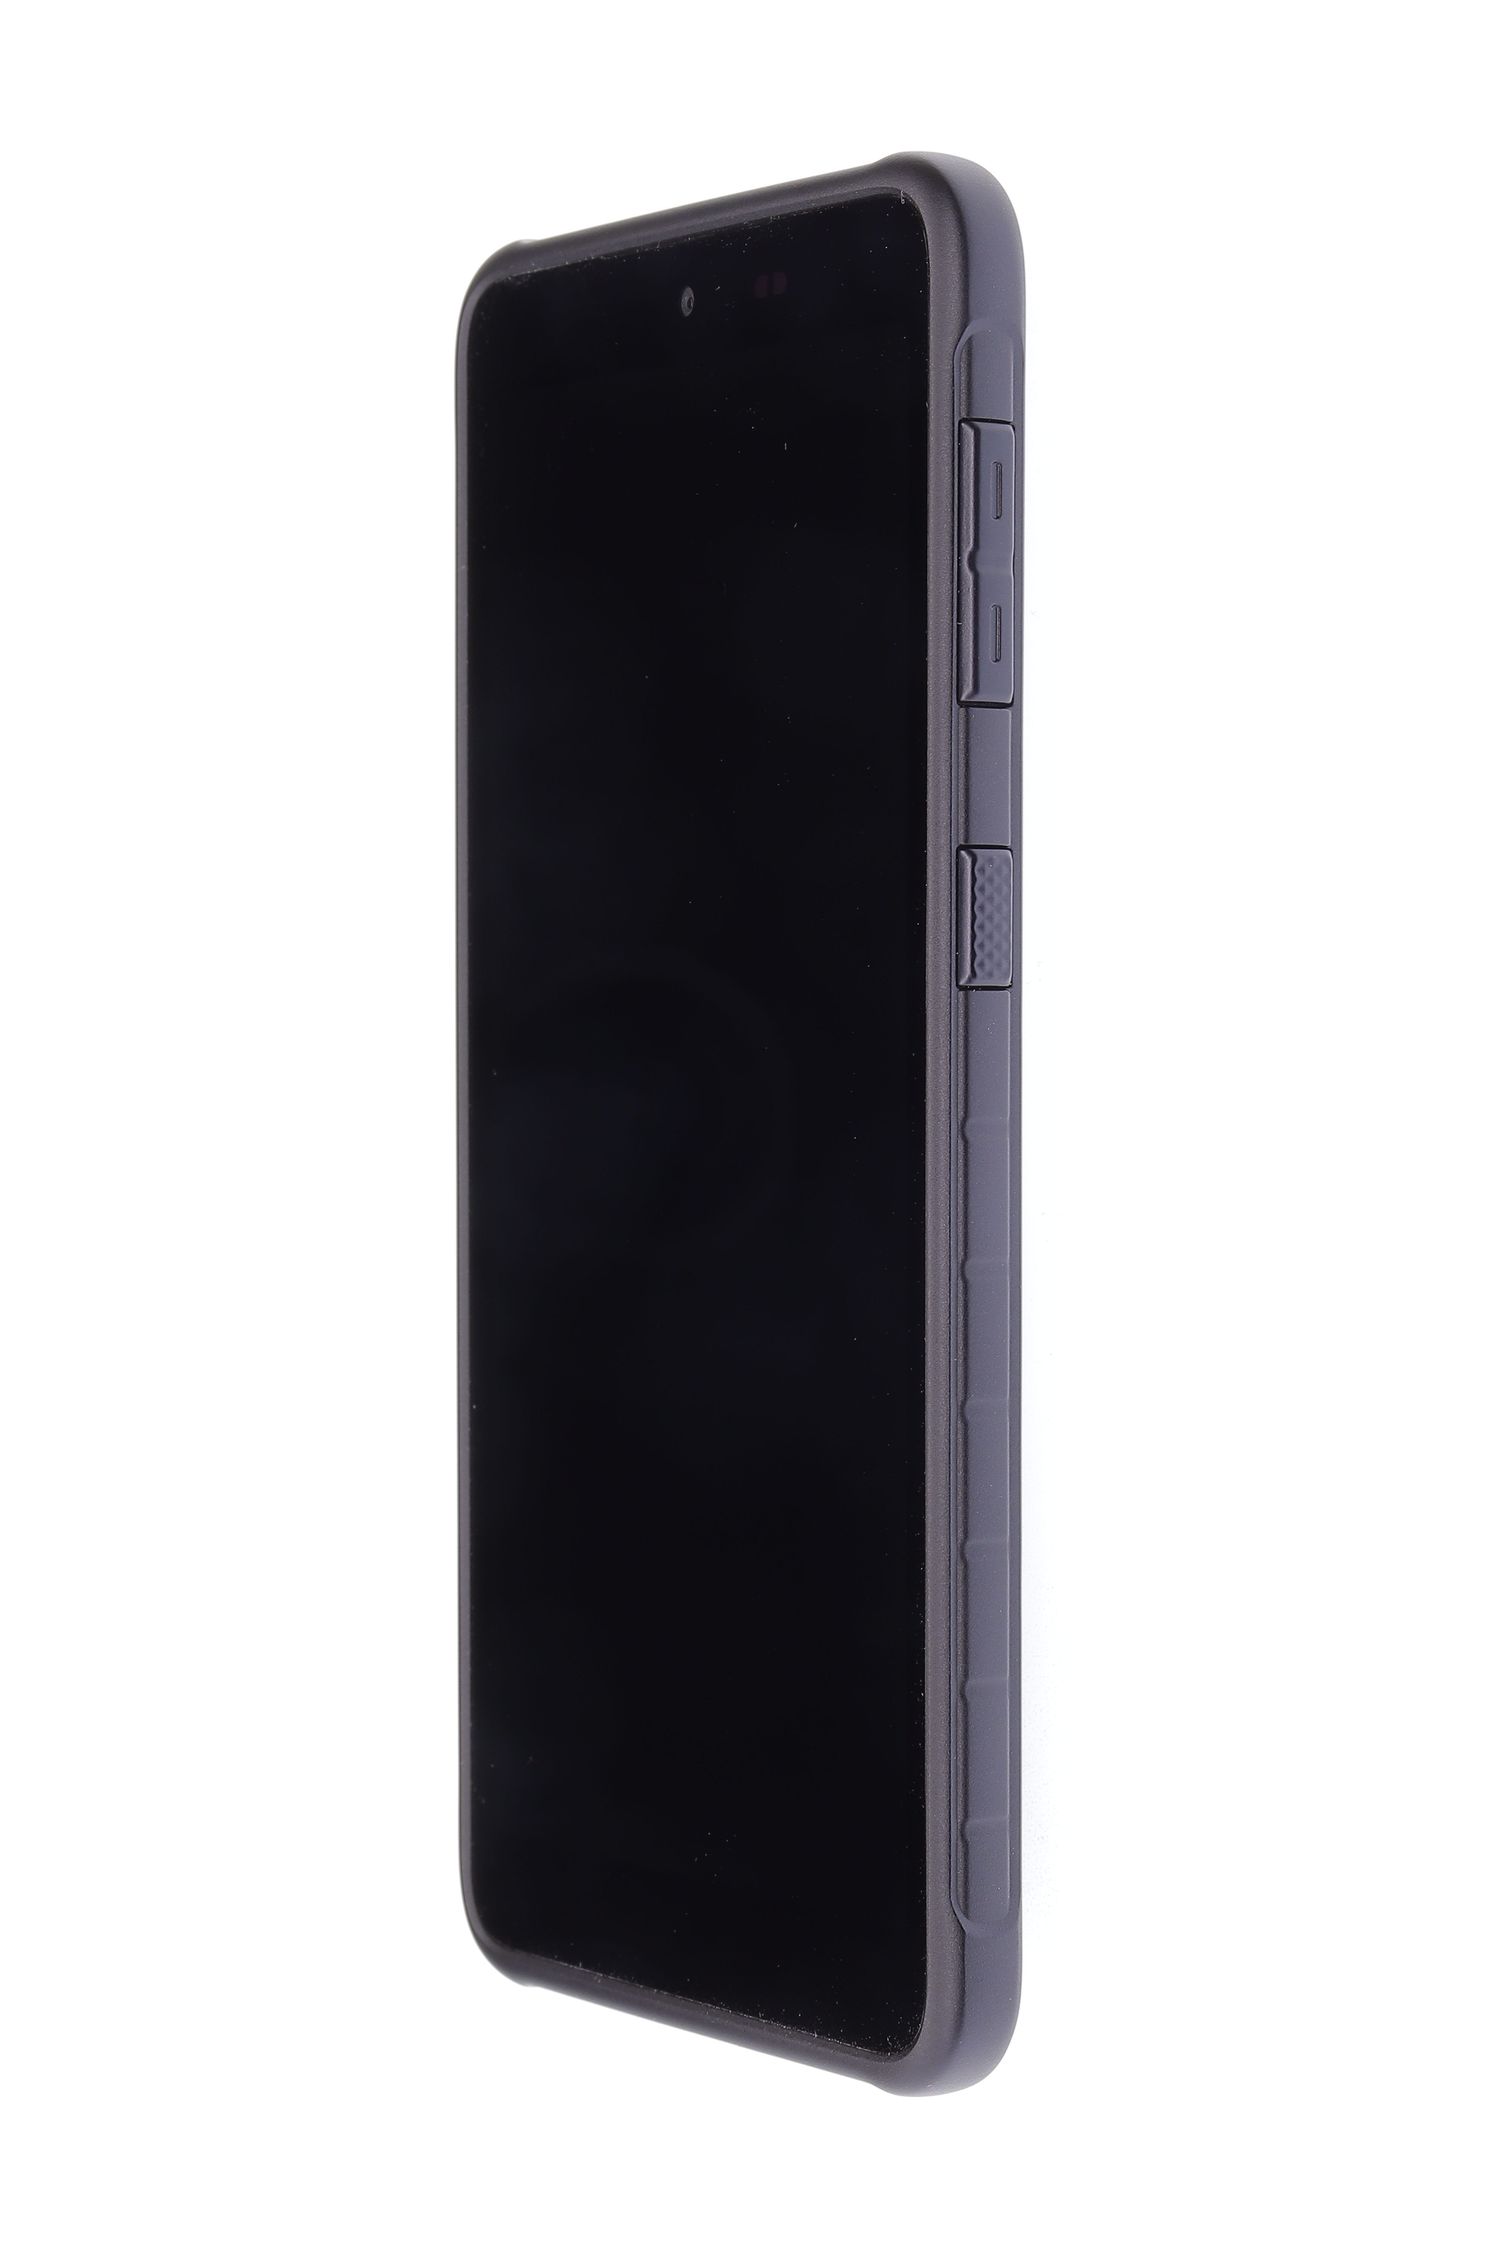 Κινητό τηλέφωνο Samsung Galaxy XCover 5 Dual Sim, Black, 64 GB, Bun